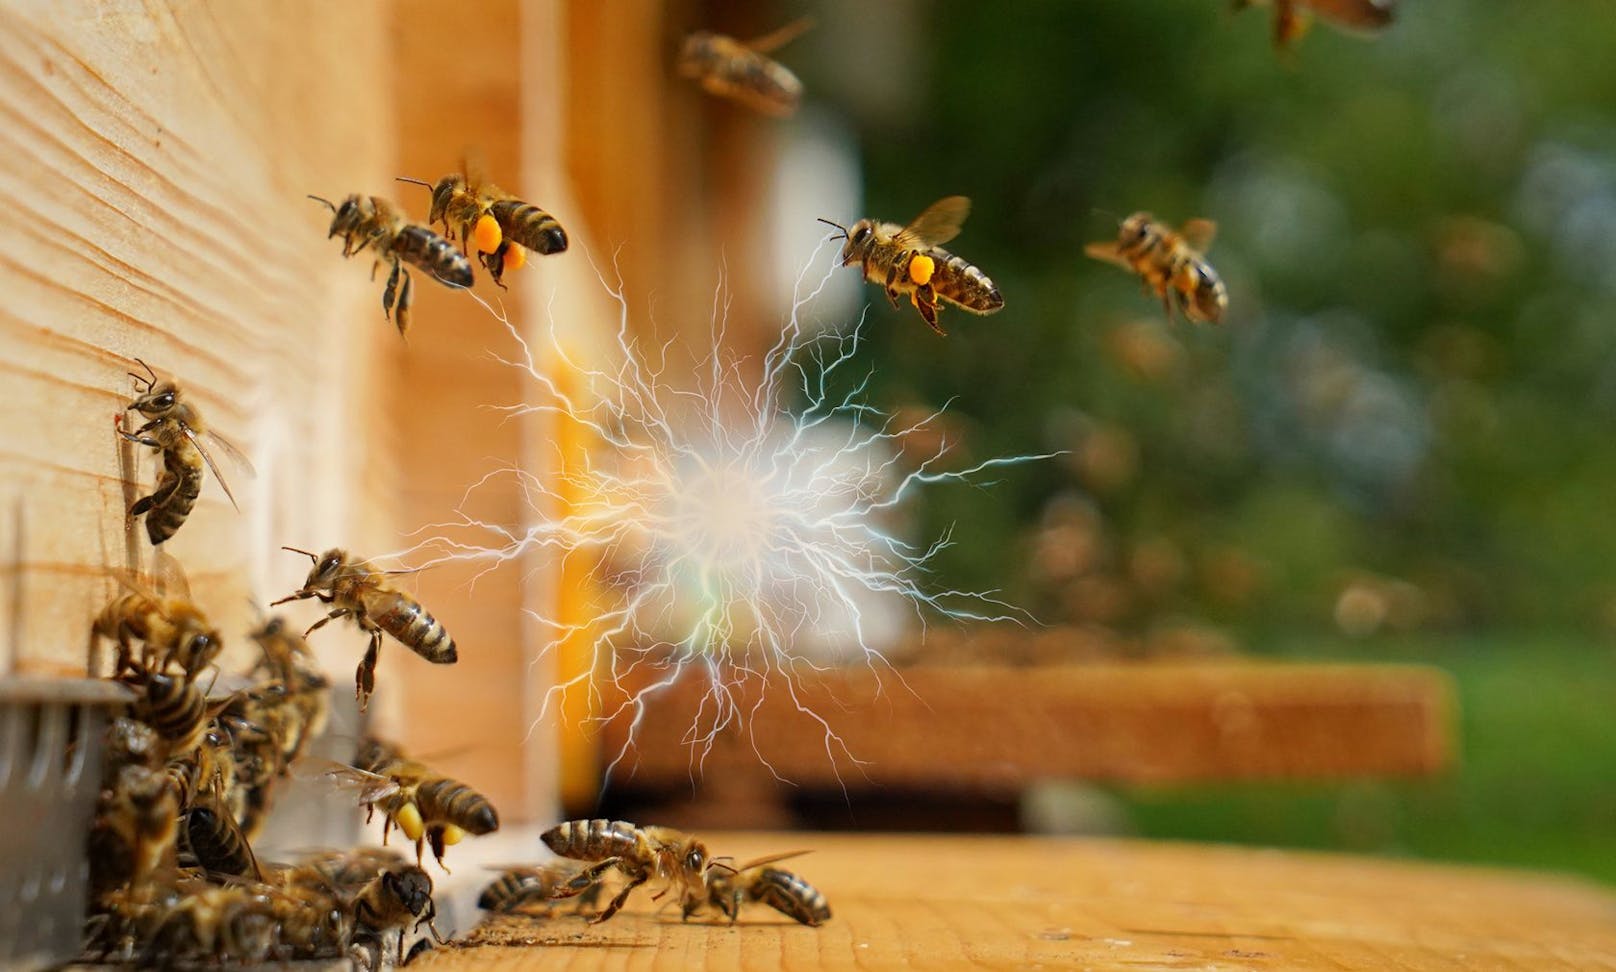 Faszinierend: Bienen und andere Schwarm-Insekten erzeugen eine elektrische Ladung, ähnlich wie Gewitterwolken.